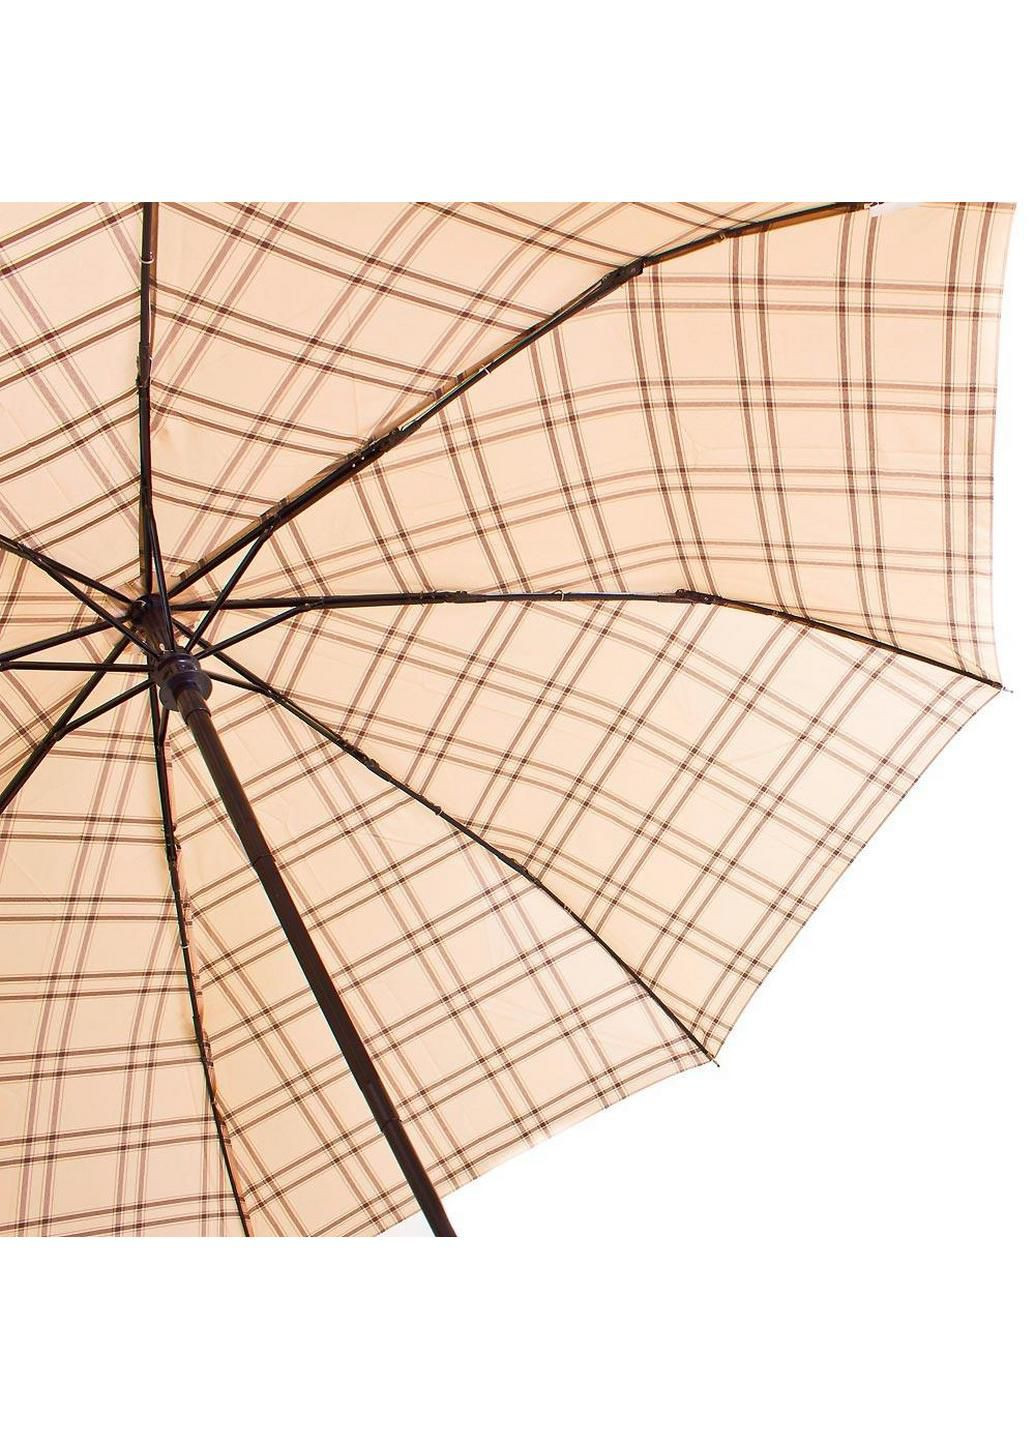 Складной зонт полуавтомат 106 см Zest (197766388)